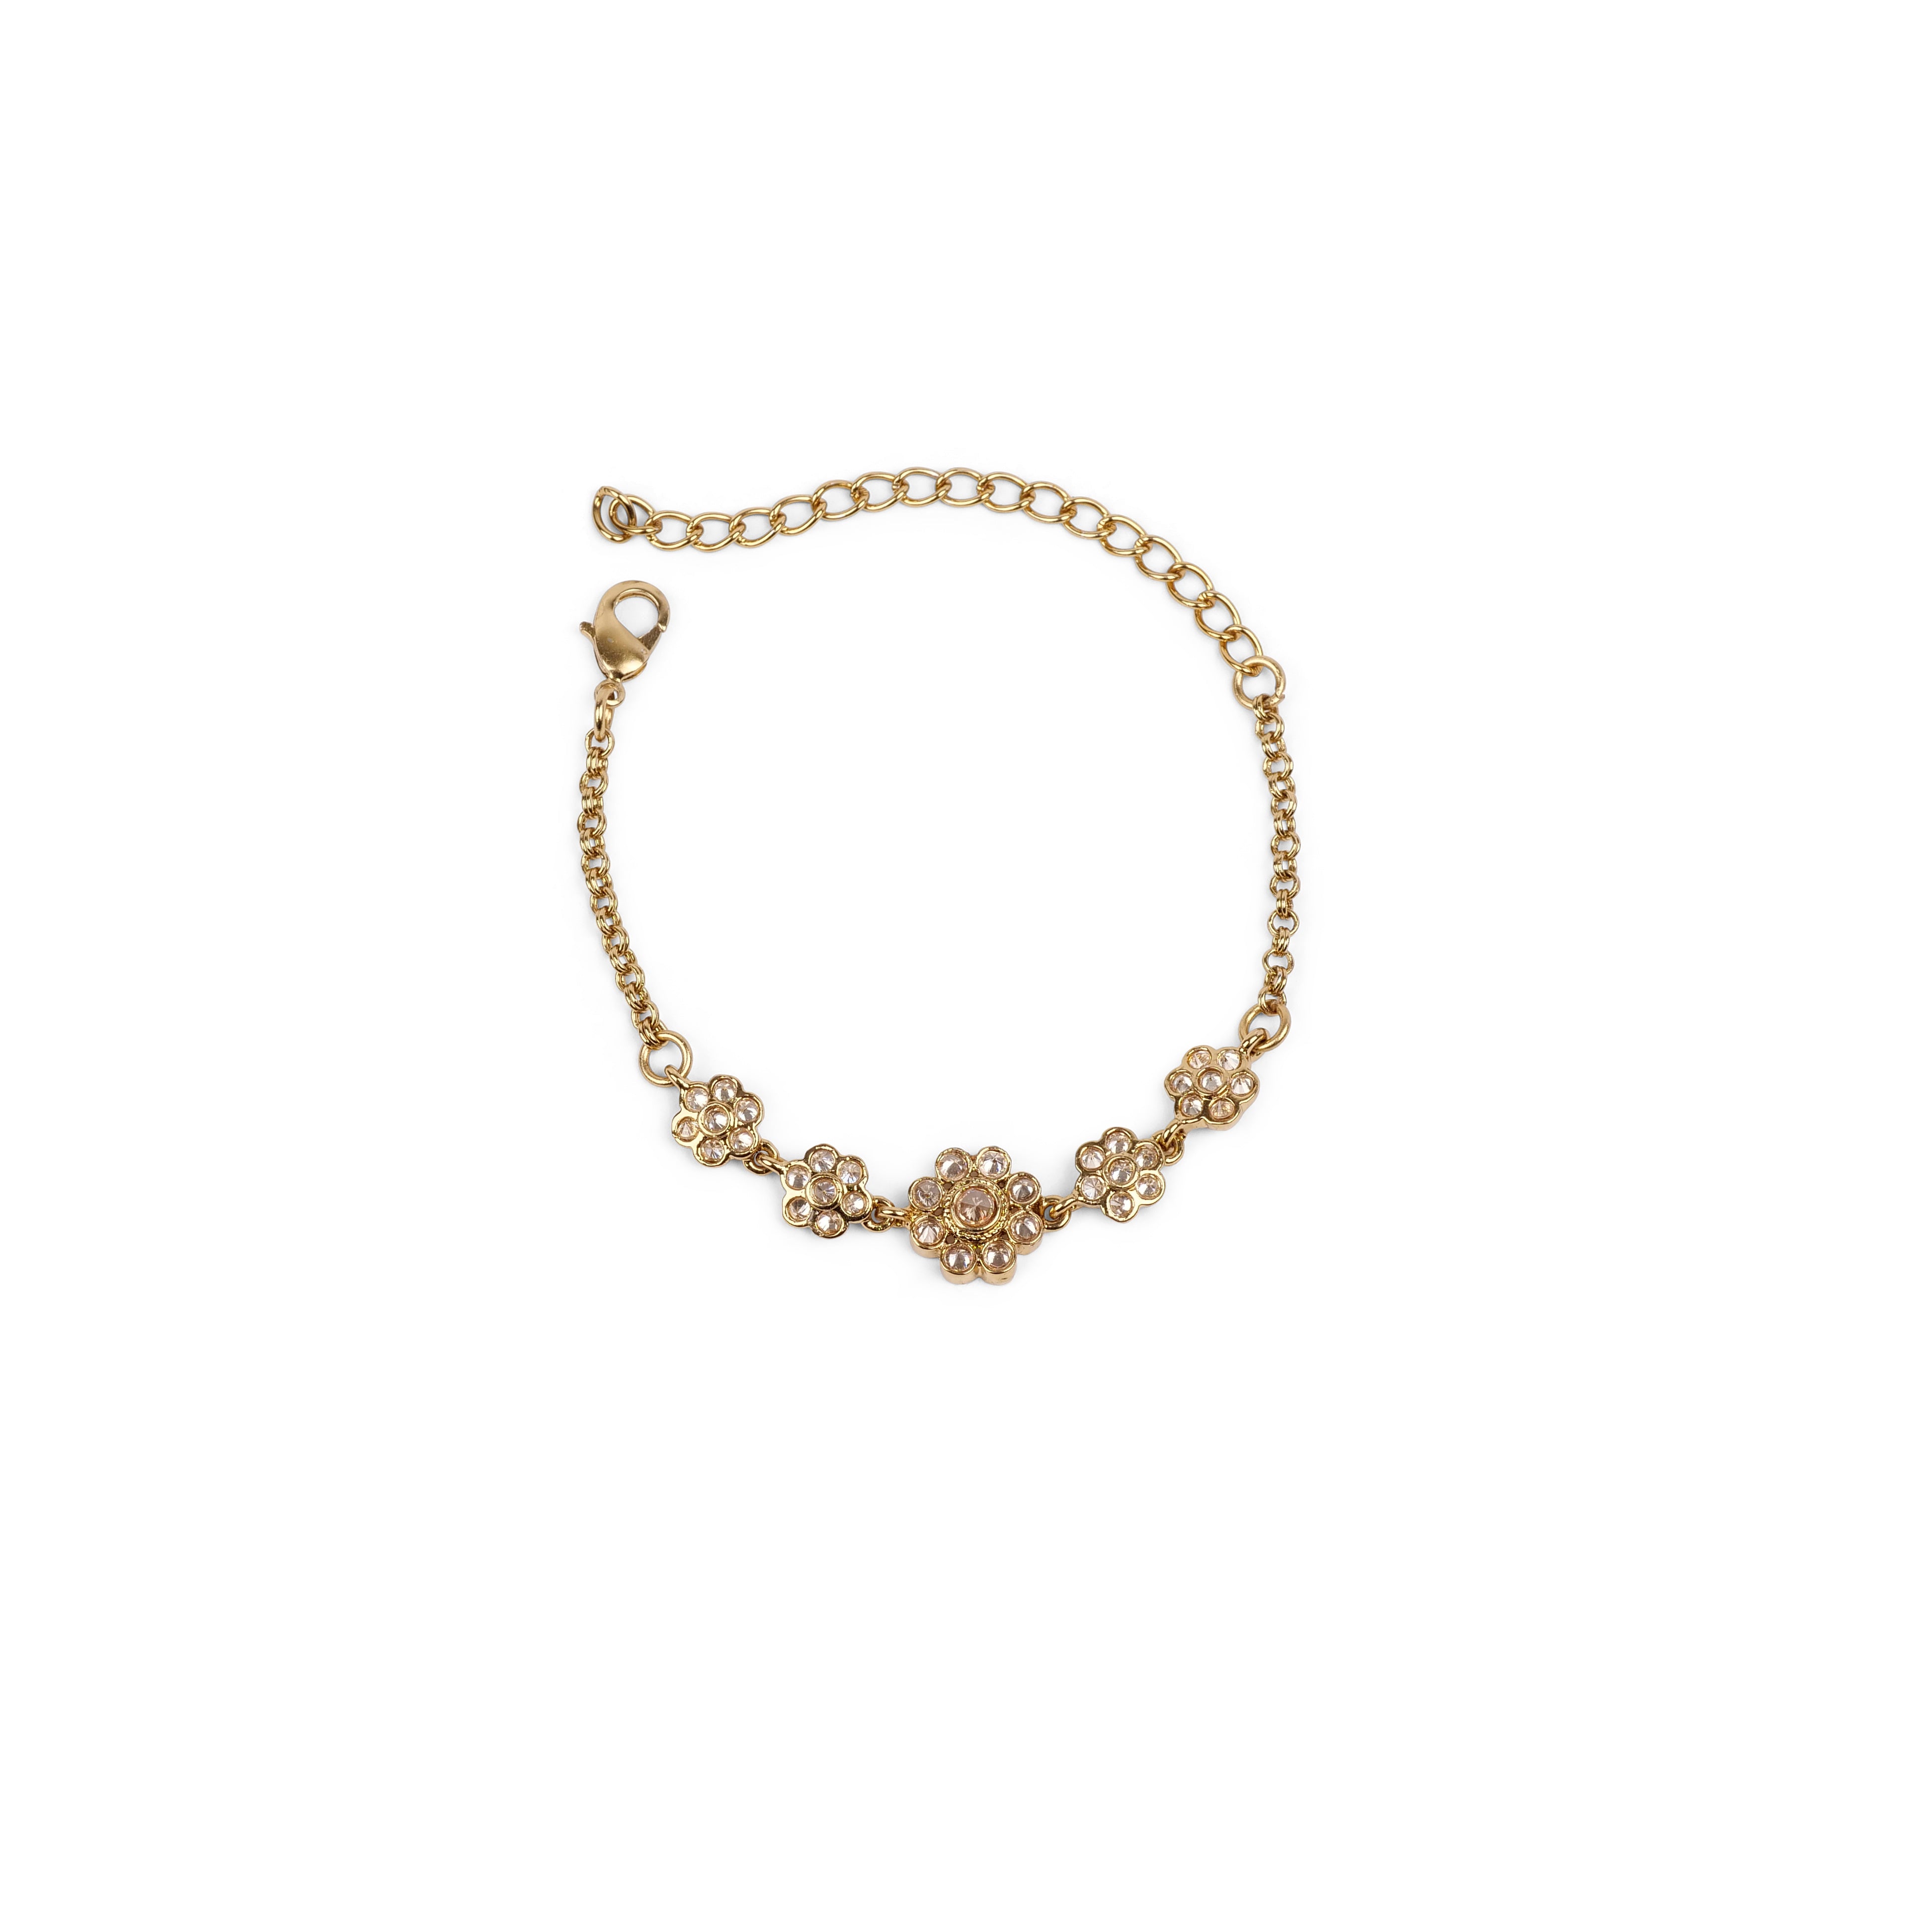 Forever Floral Bracelet in Antique Gold